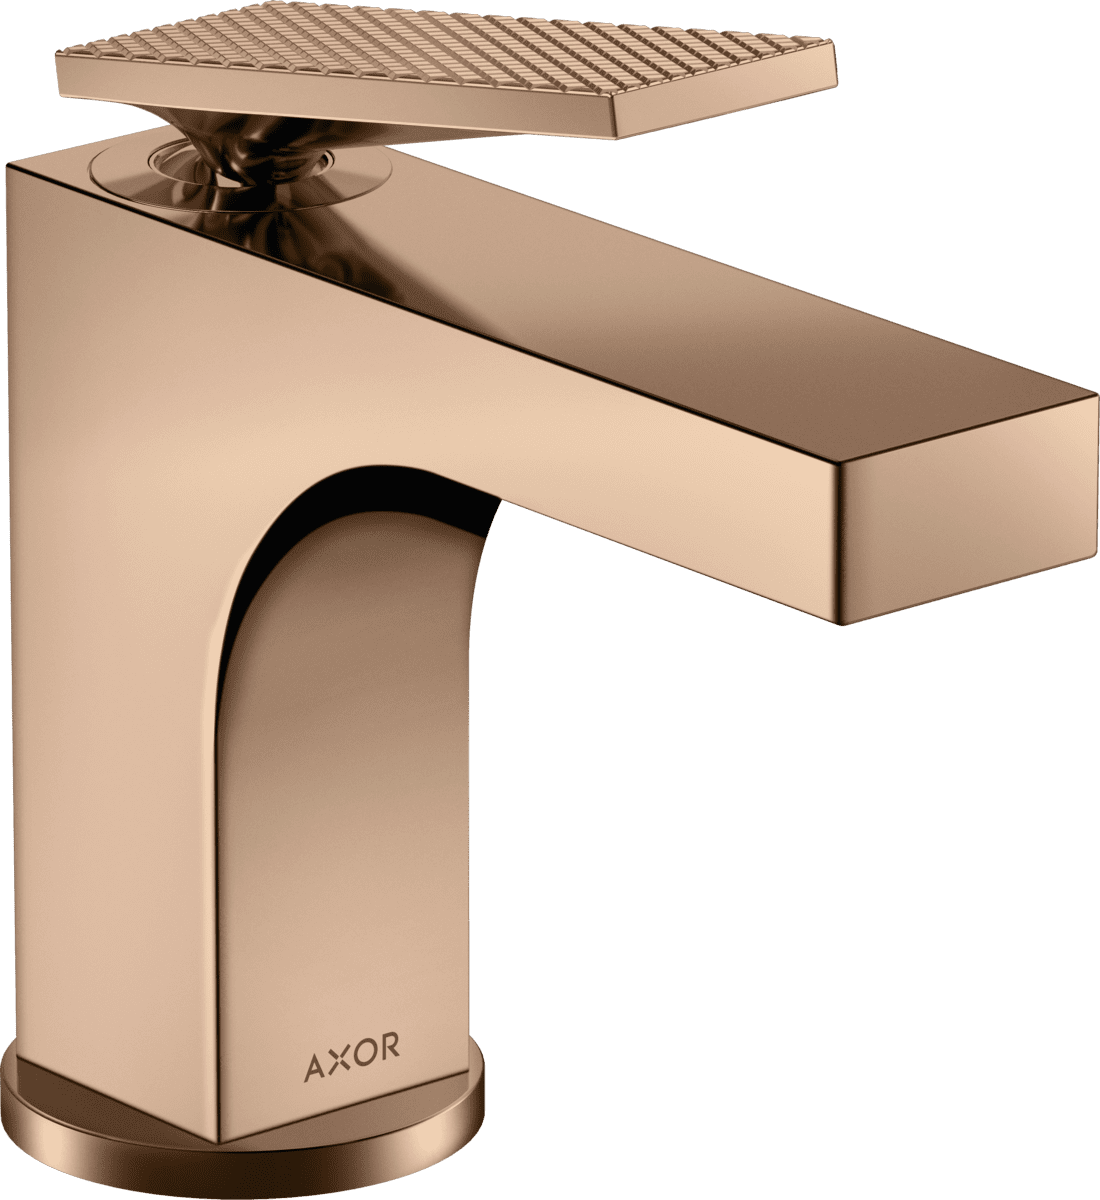 HANSGROHE AXOR Citterio Tek kollu lavabo bataryası 90, çubuk volan ile kumandalı-rhombic kesim #39001300 - Parlak Kırmızı Altın resmi